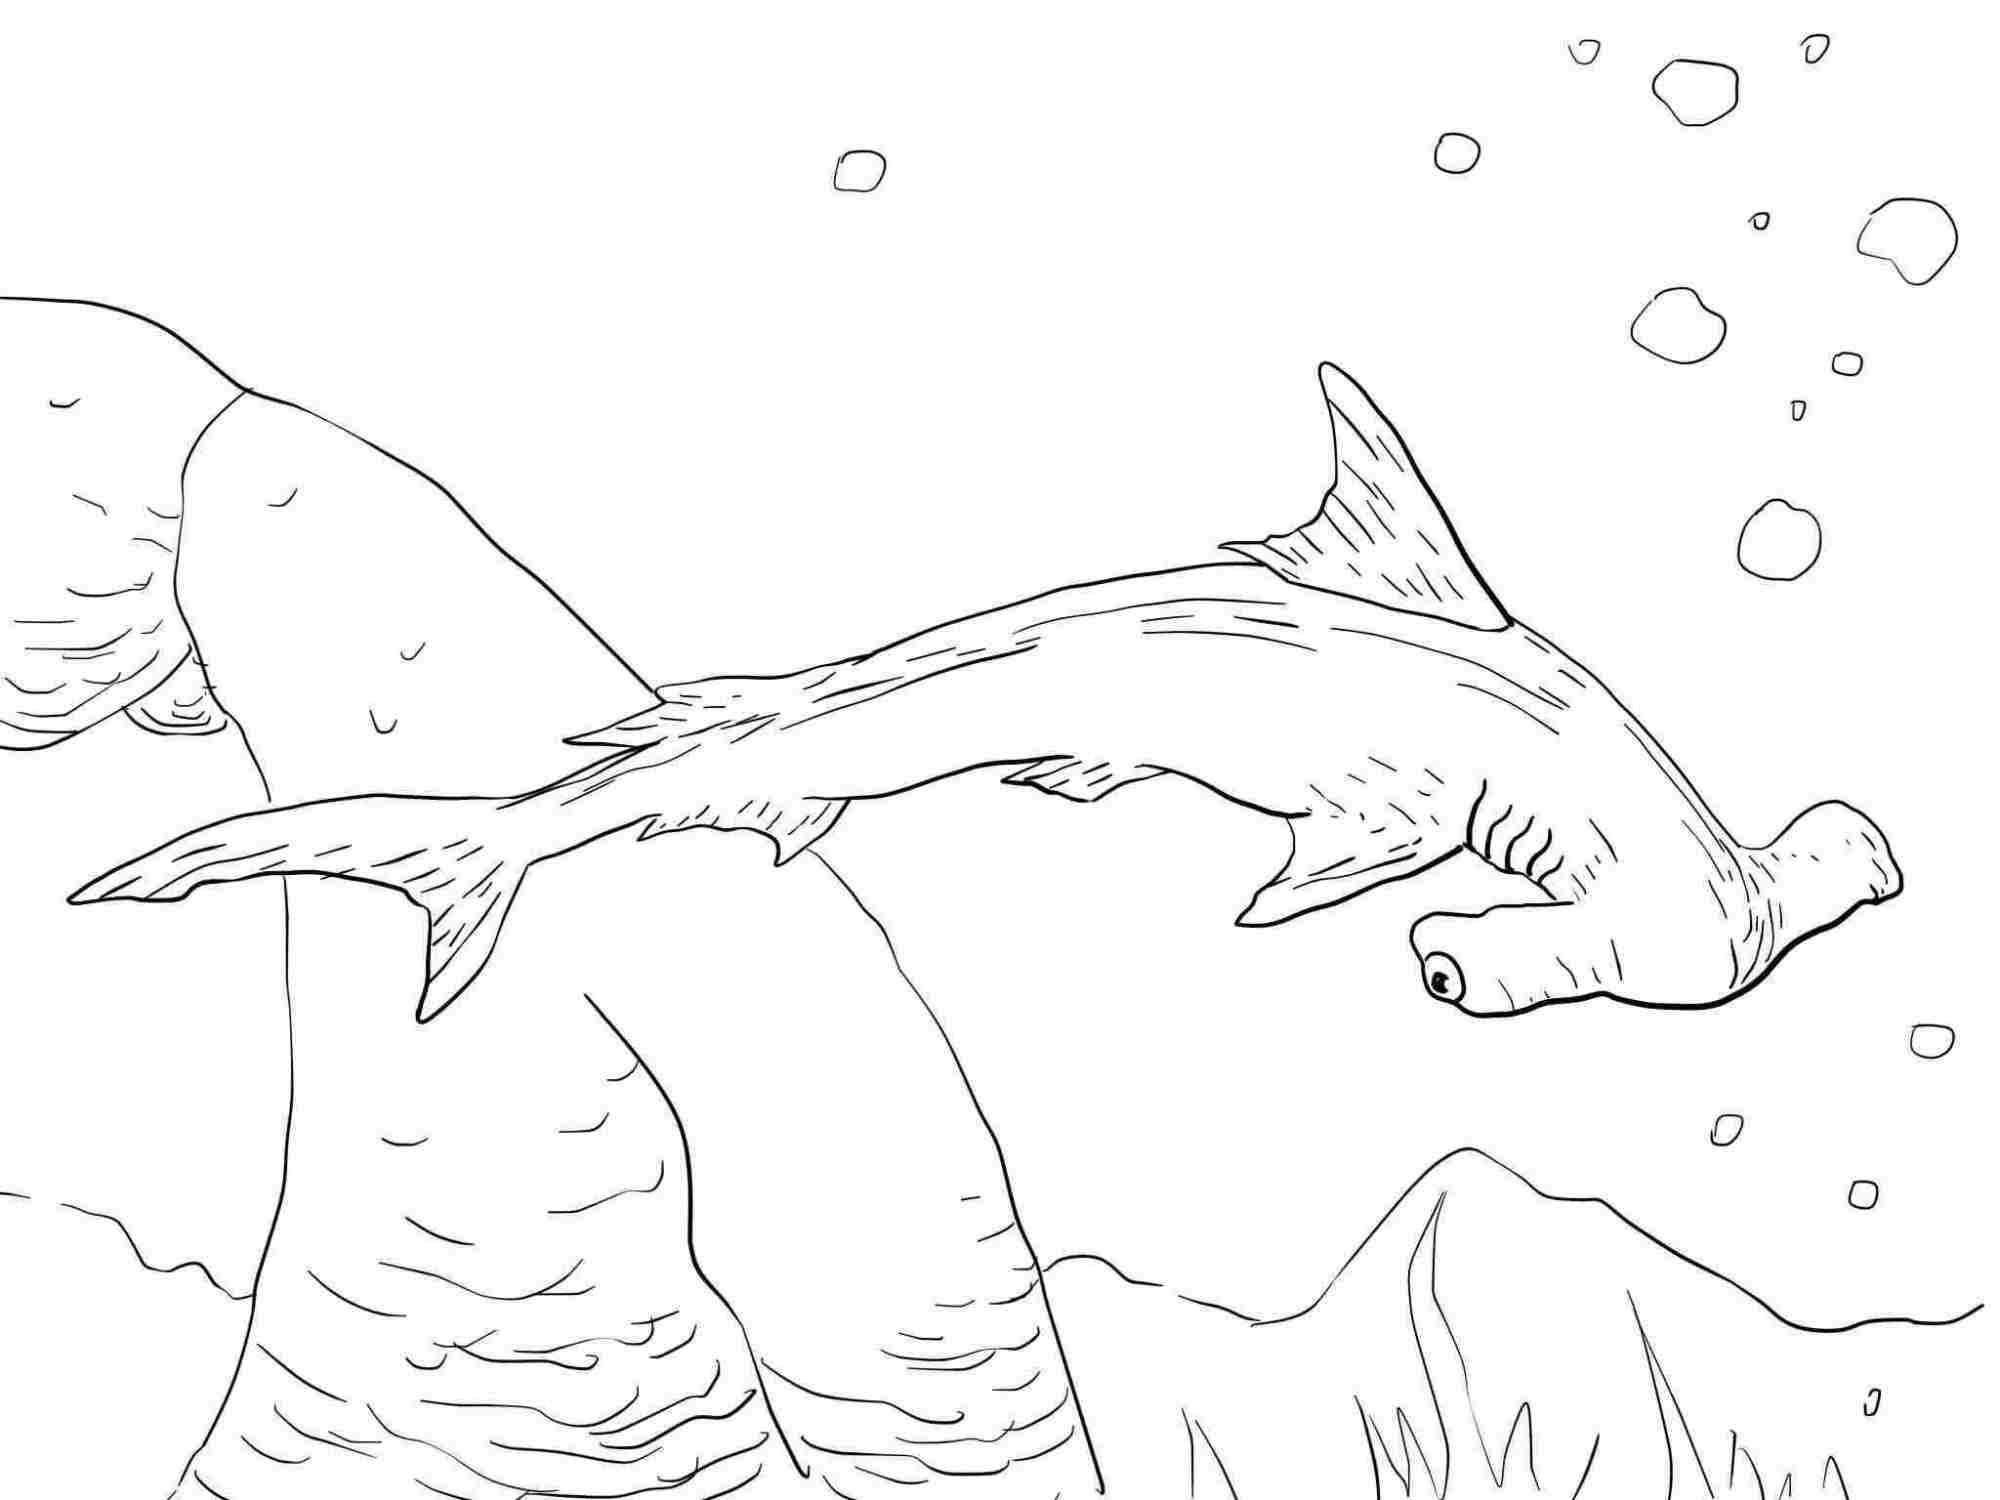 Bogenstirn-Hammerhai hat einen breit gewölbten Kopf mit schmaler Klinge